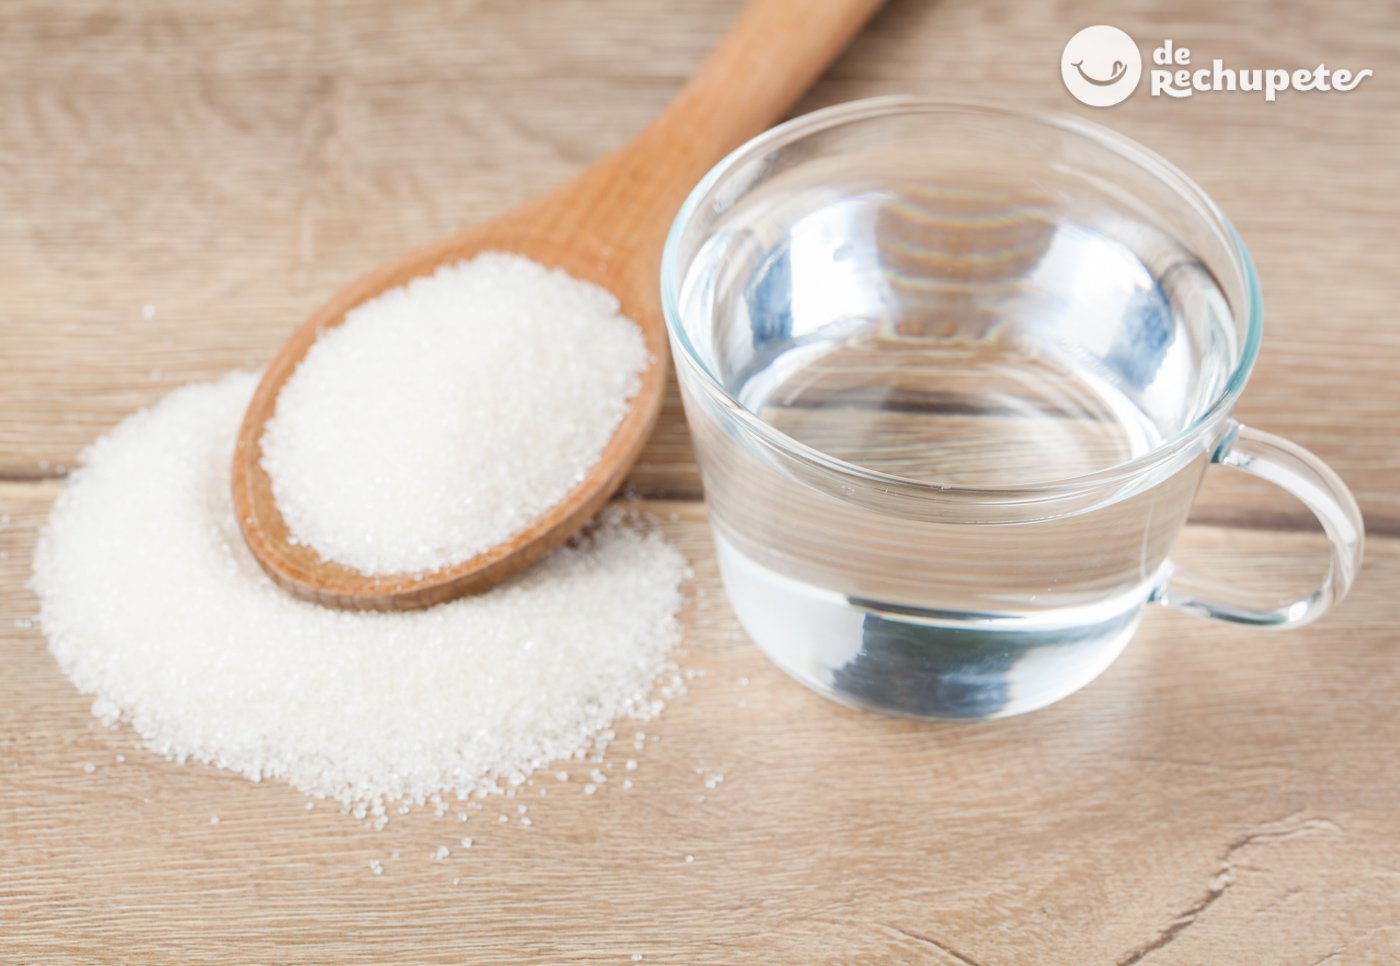 ¿Cuánto tarda en hervir el agua con azúcar?